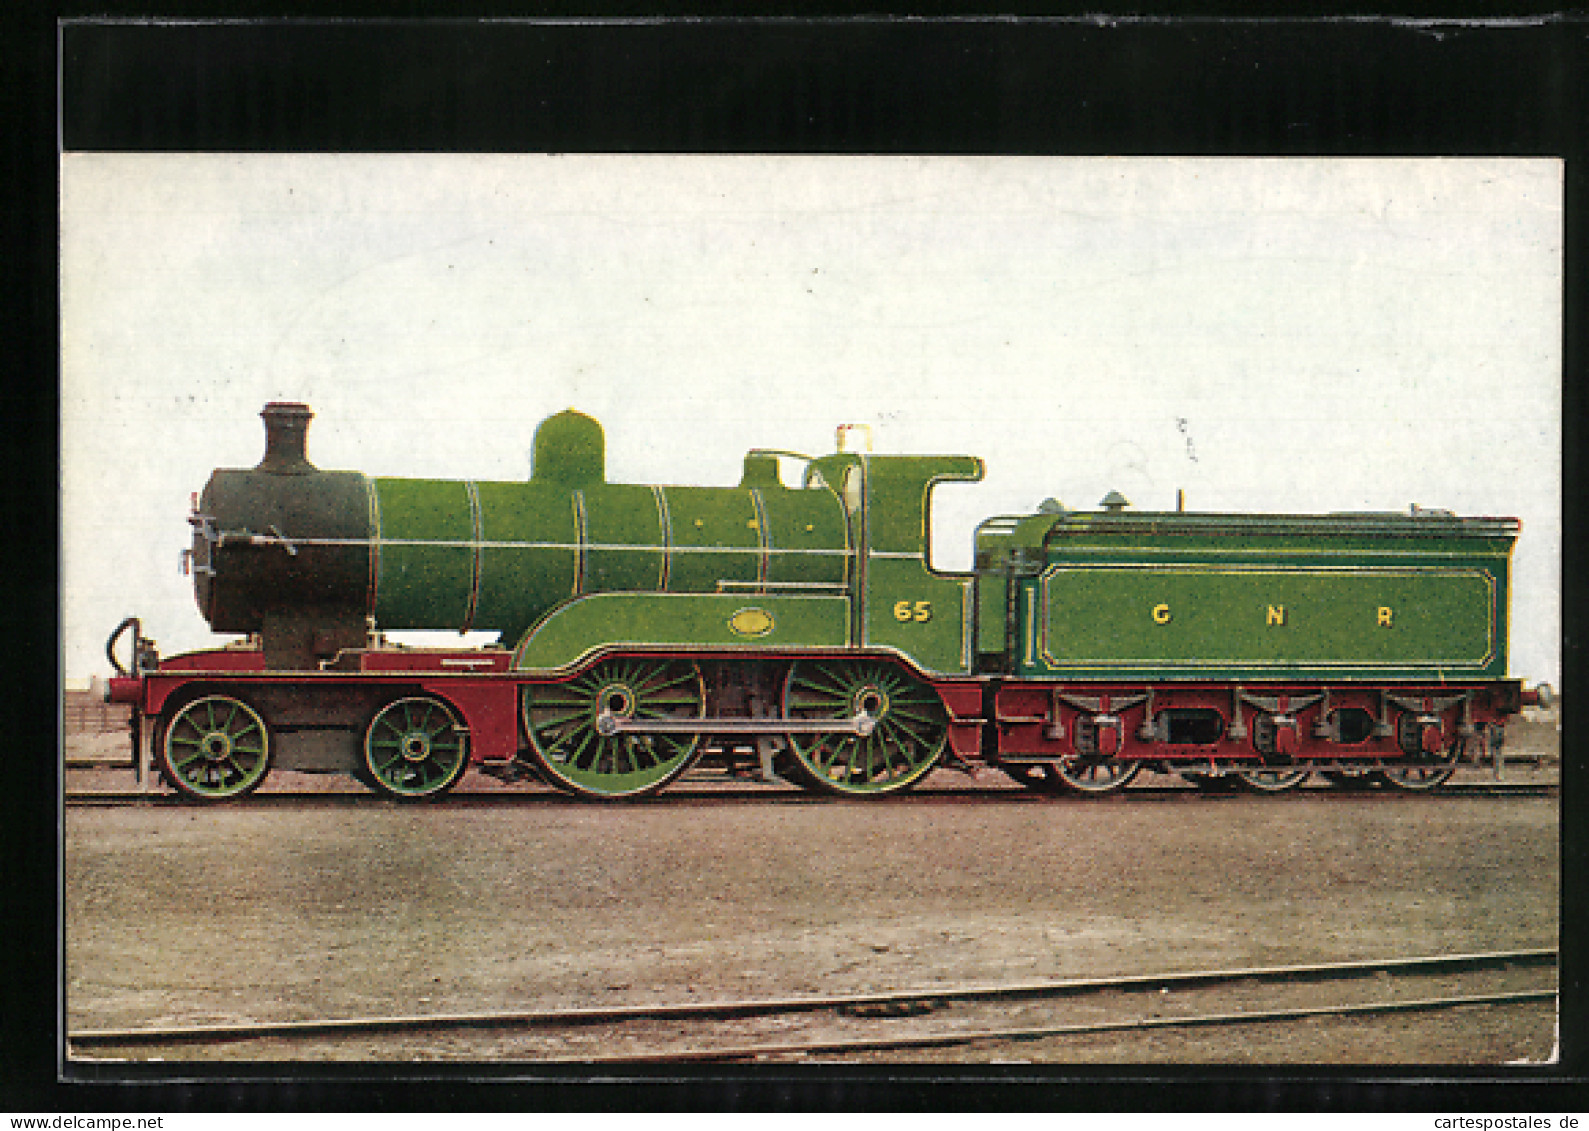 Pc Englische Eisenbahn 65, GNR, Express Passenger Engine  - Trains